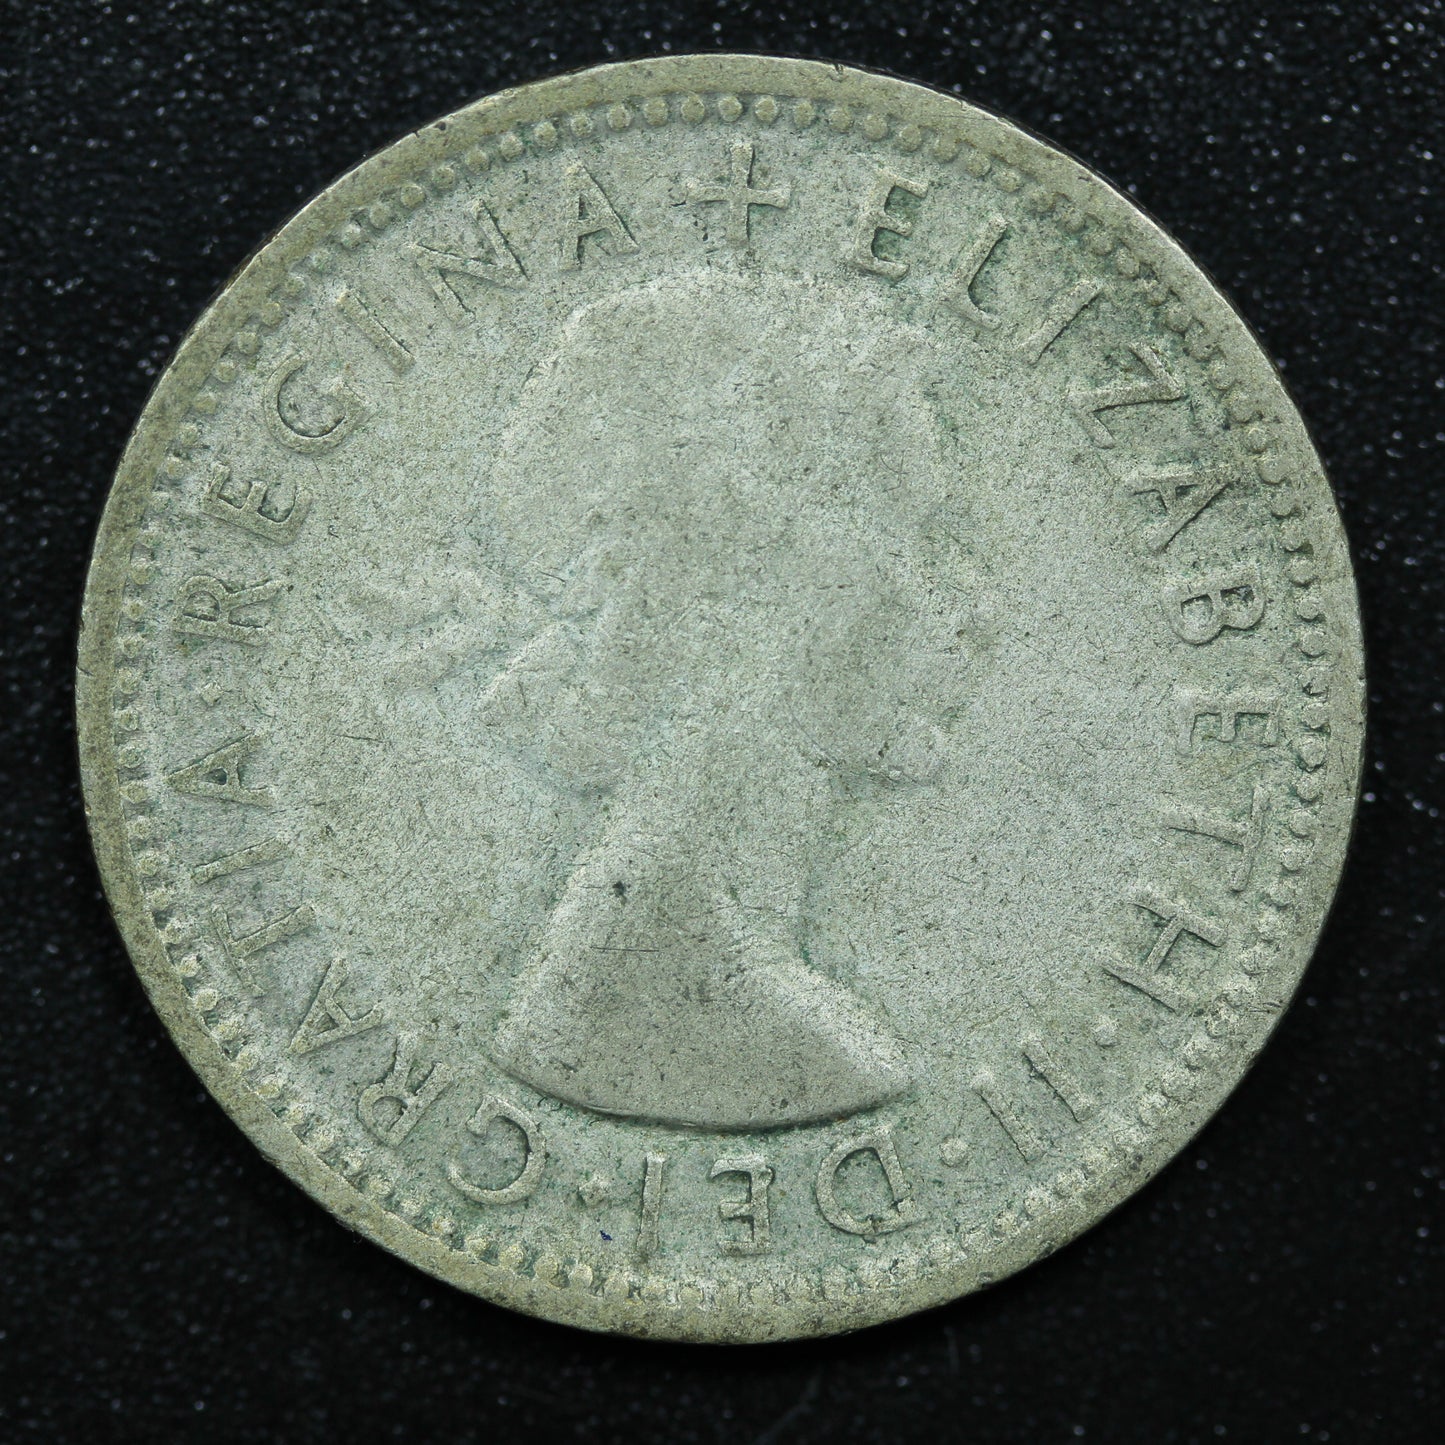 1953 Australia Shilling Silver Coin - KM# 53